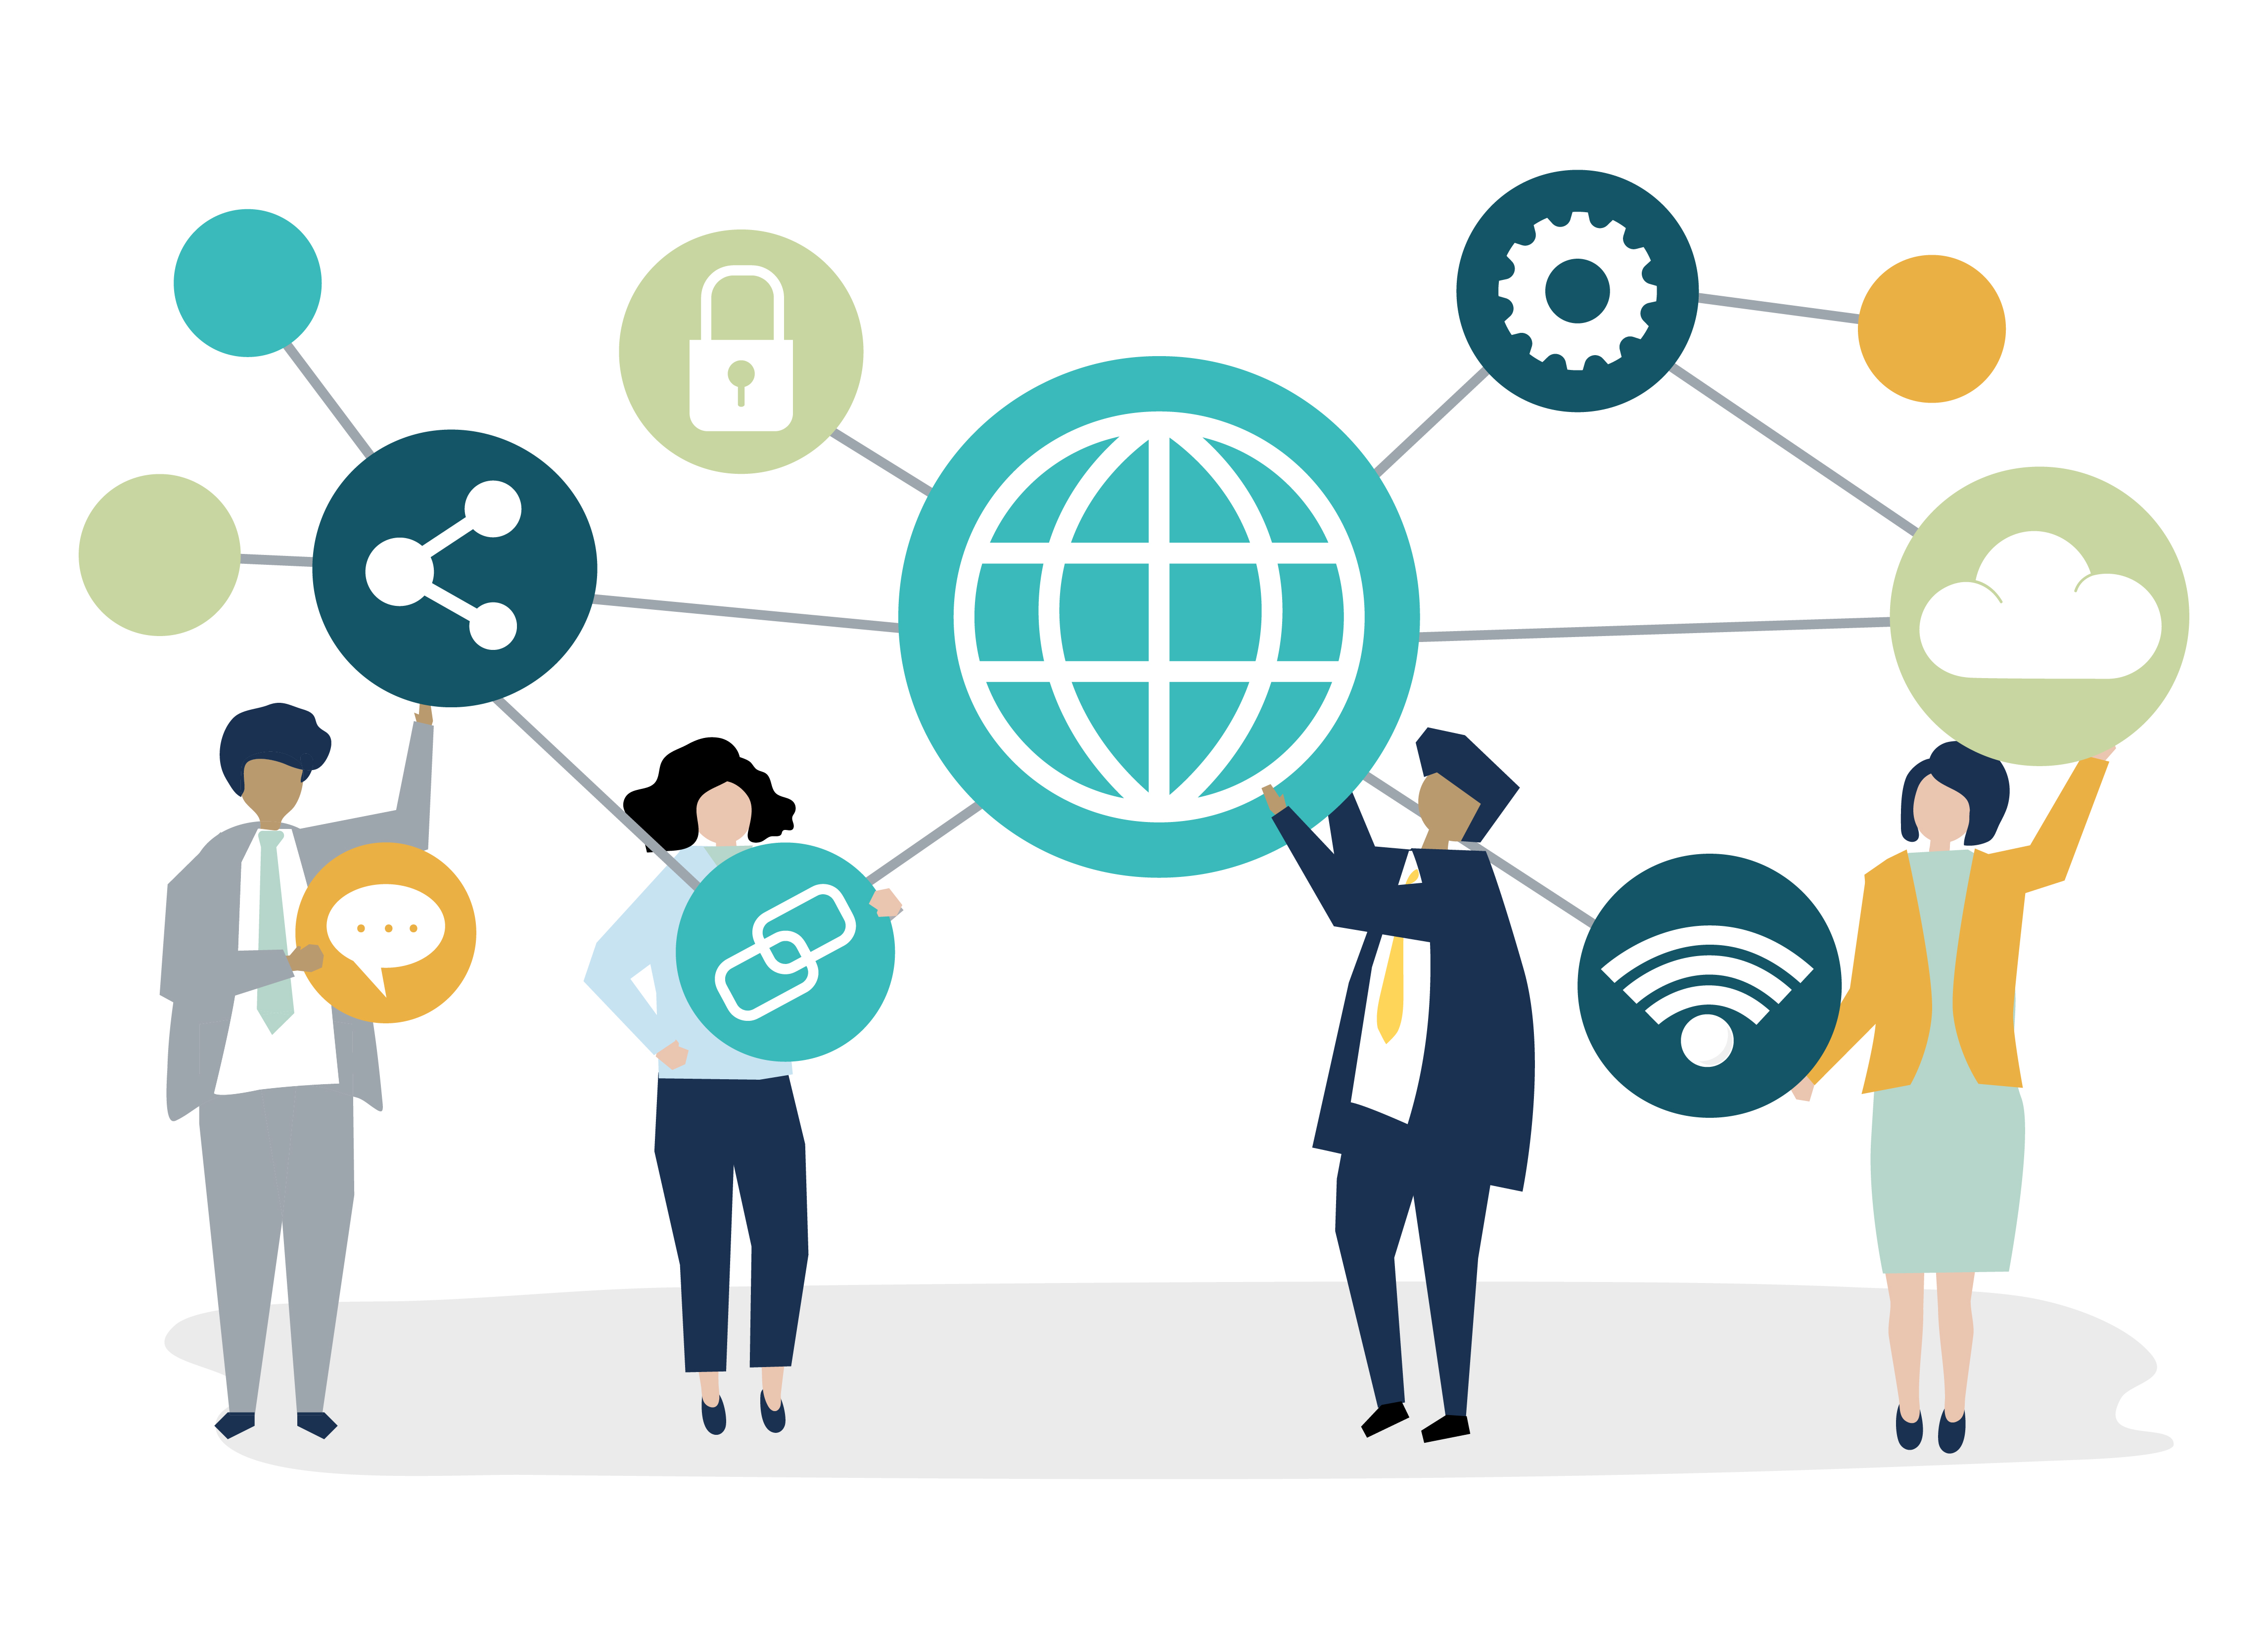 La imagen muestra a cuatro personas que sostienen iconos relacionados con internet (nube, internet, wifi, enlace, bloquear y compartir). Todos los iconos se conectan con otros  a través de líneas